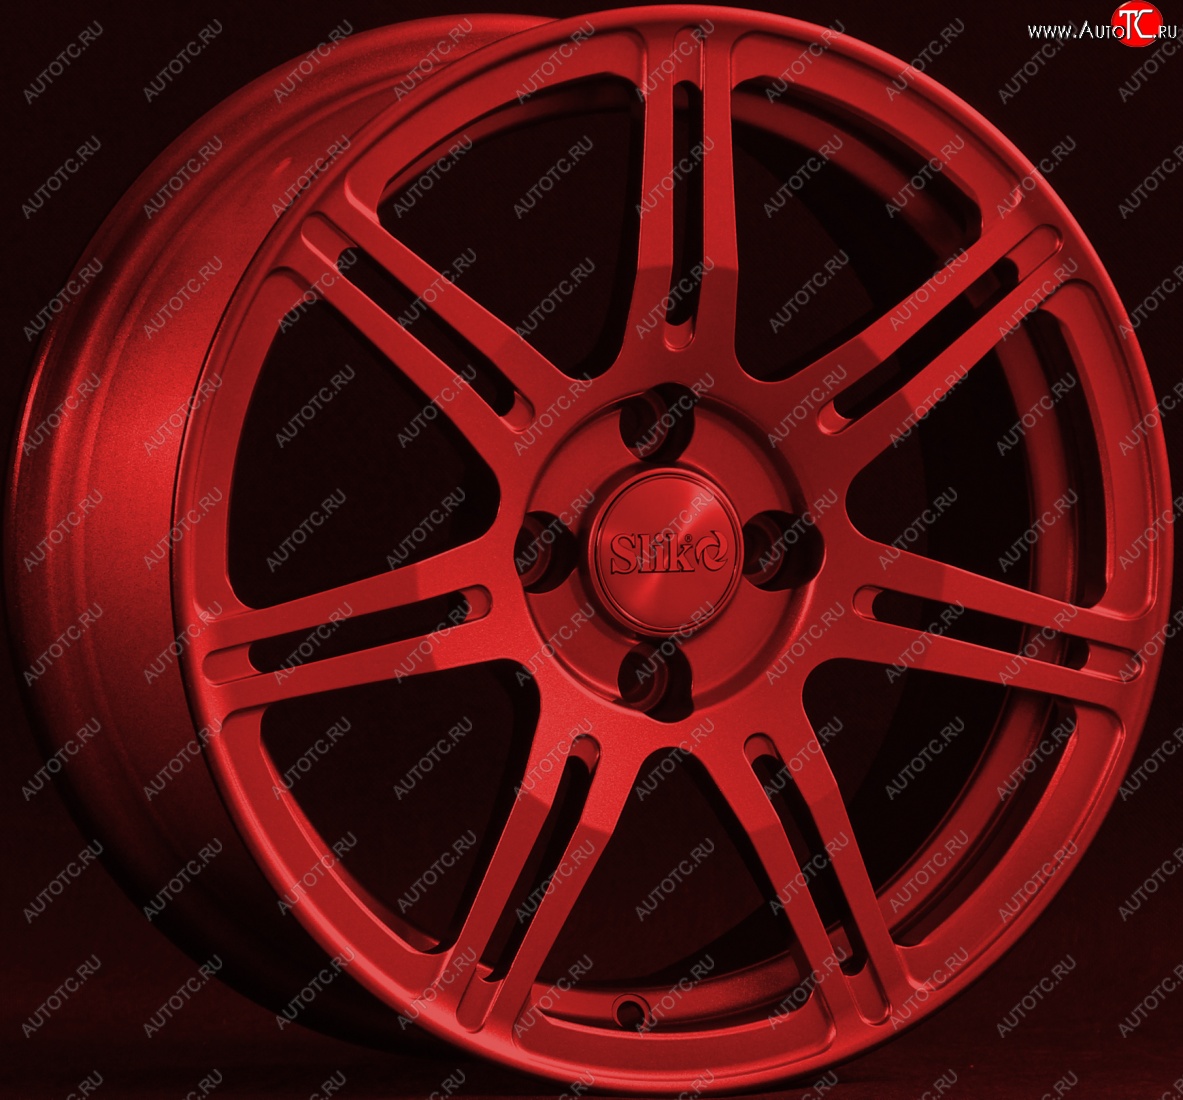 15 249 р. Кованый диск Slik Classik 6.5x15 (Красный) Opel Astra H седан рестайлинг (2007-2009) 5x110.0xDIA65.1xET35.0 (Цвет: Красный)